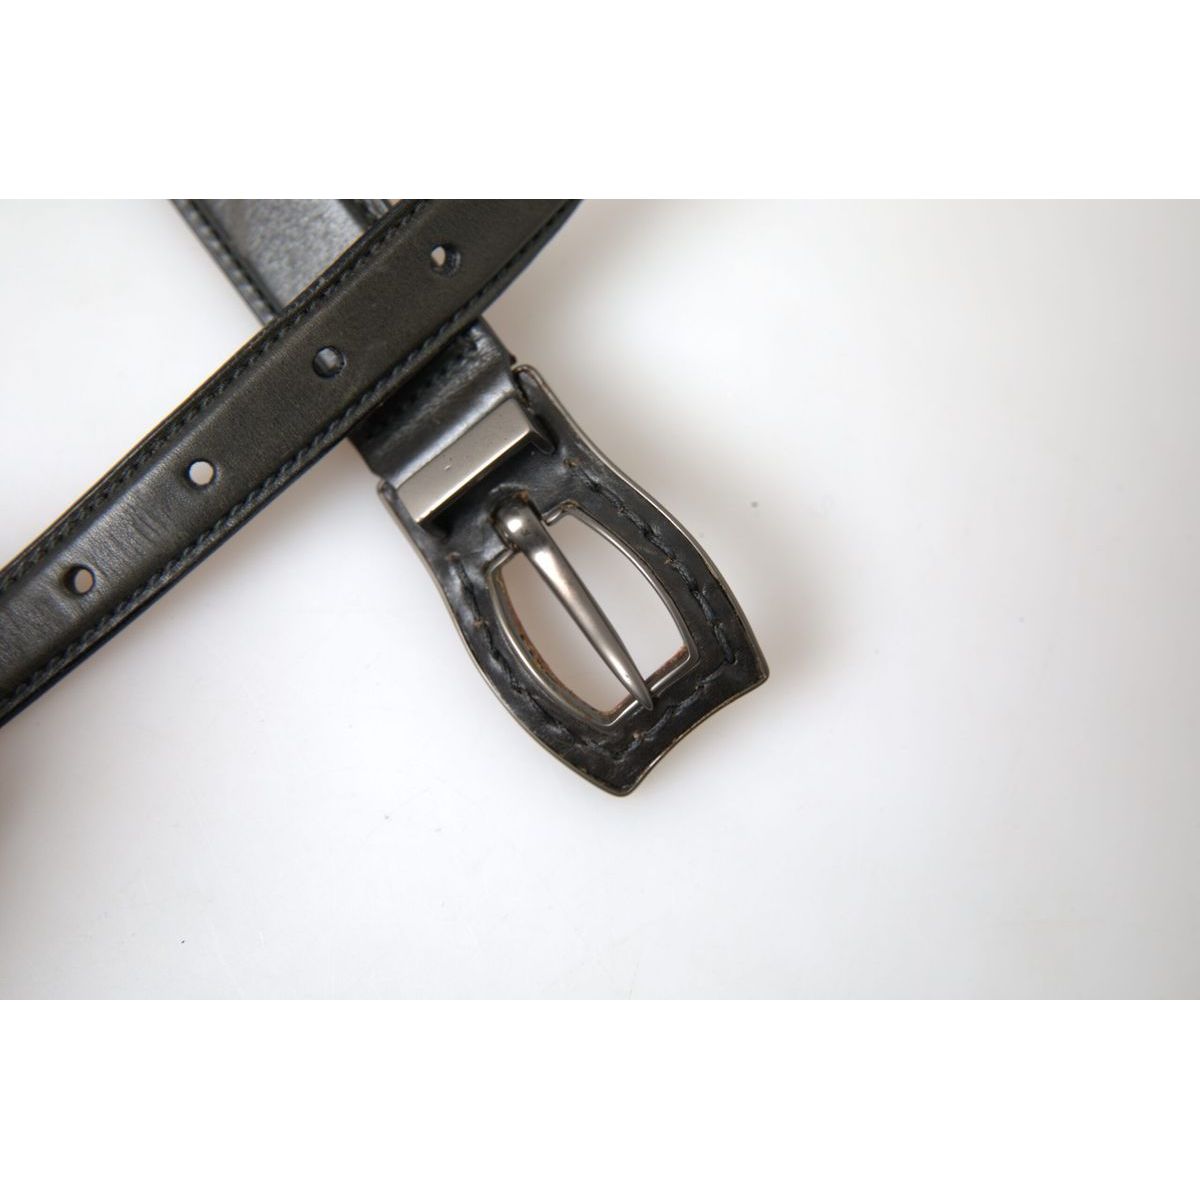 Ermanno Scervino Exquisite Italian Leather Belt with Metal Buckle black-leather-metal-buckle-cintura-belt